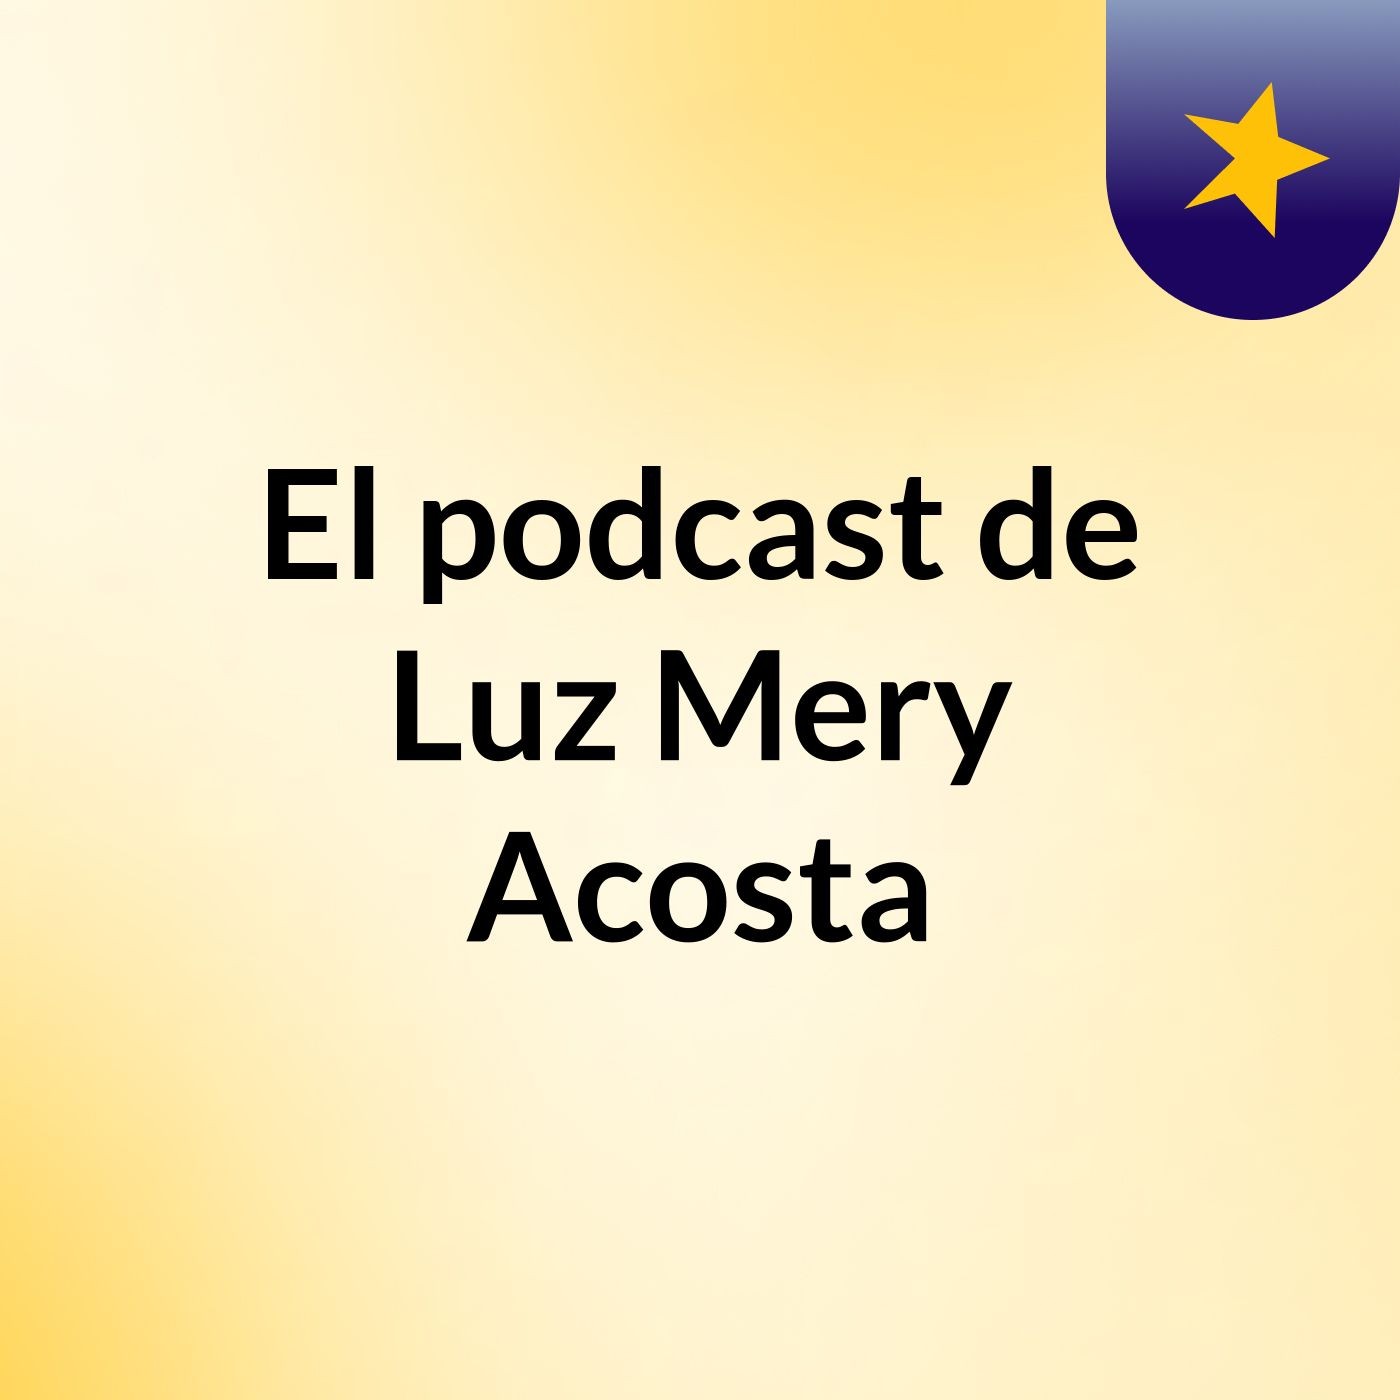 El podcast de Luz Mery Acosta